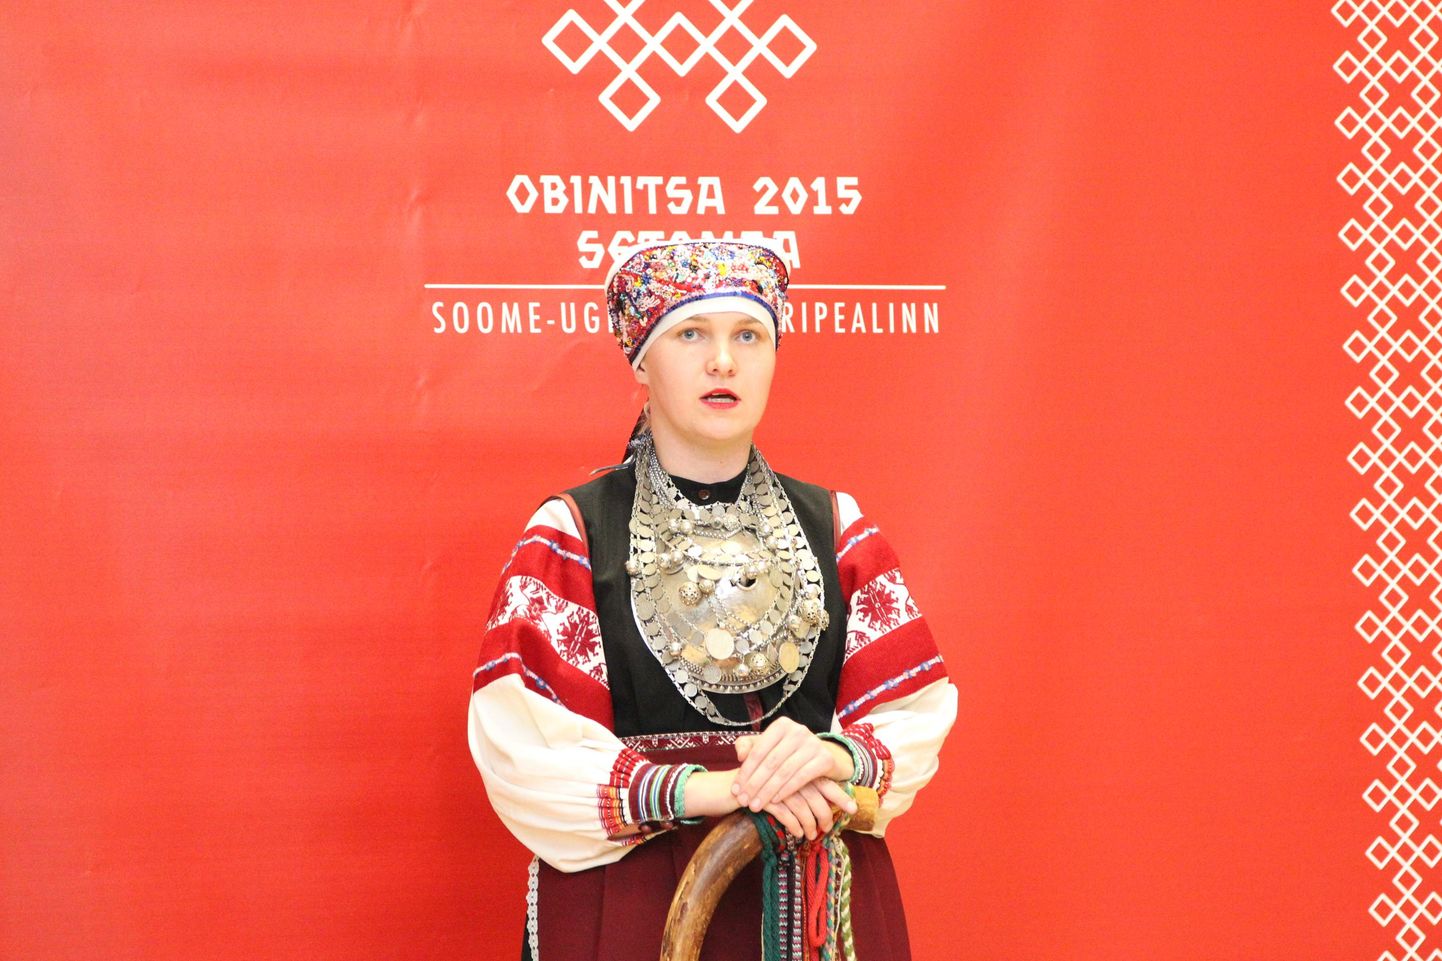 Obinitsast sai tänavu jaanuaris soome-ugri kultuuripealinn. Seto ülemsootska Annela Laaneots.